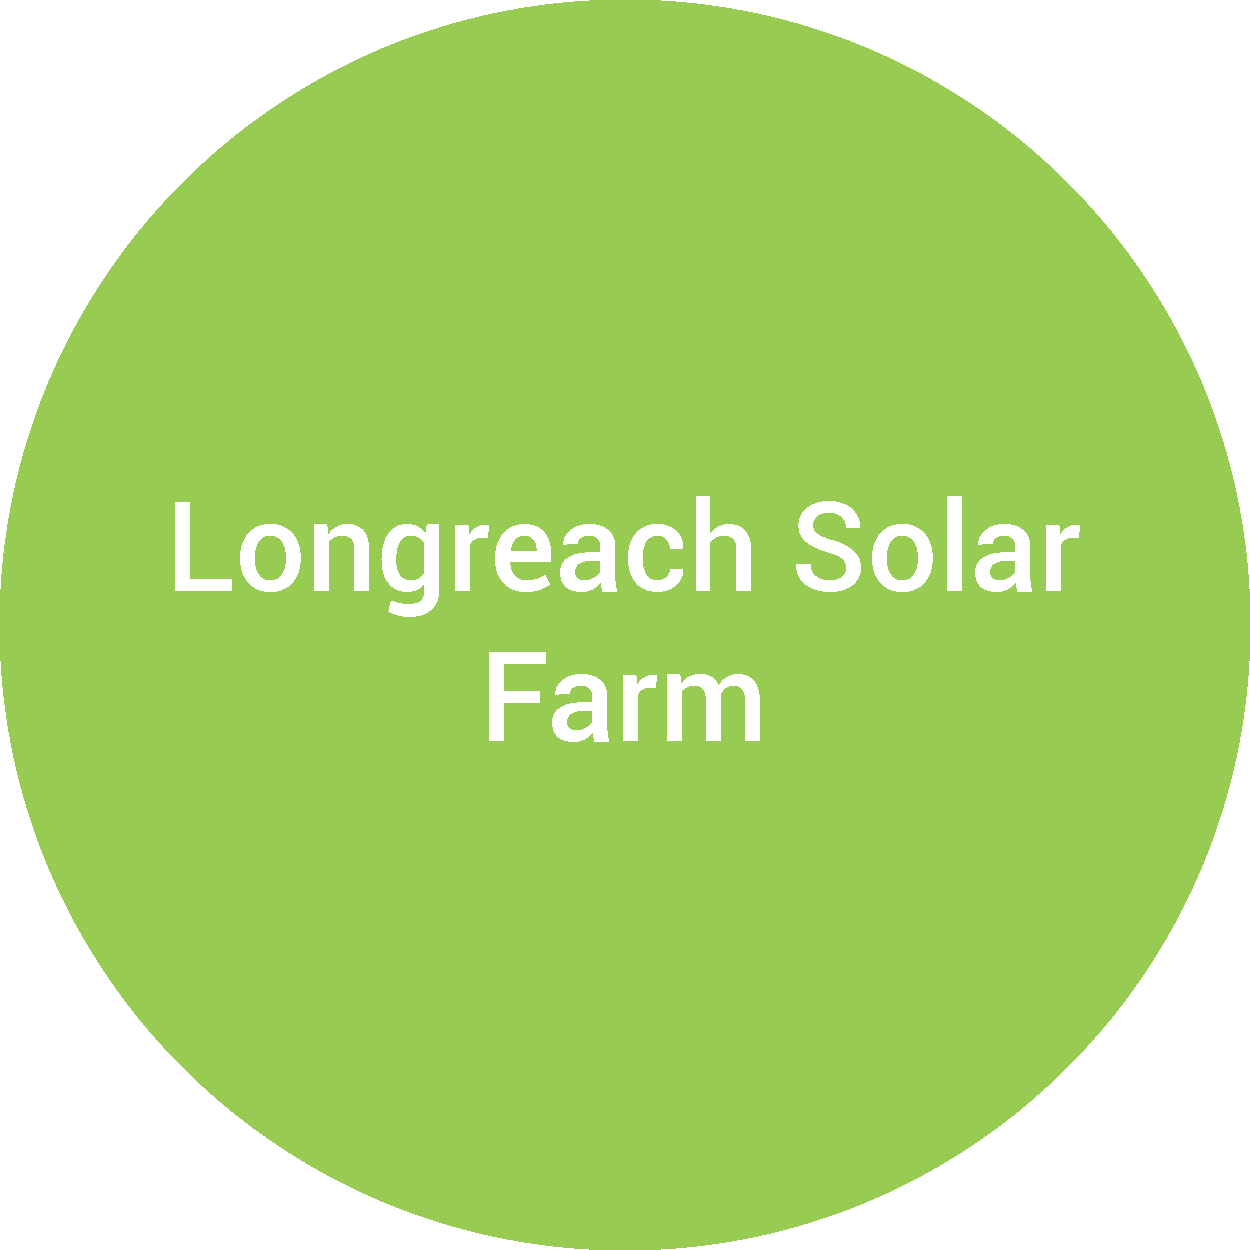 Longreach Solar Farm